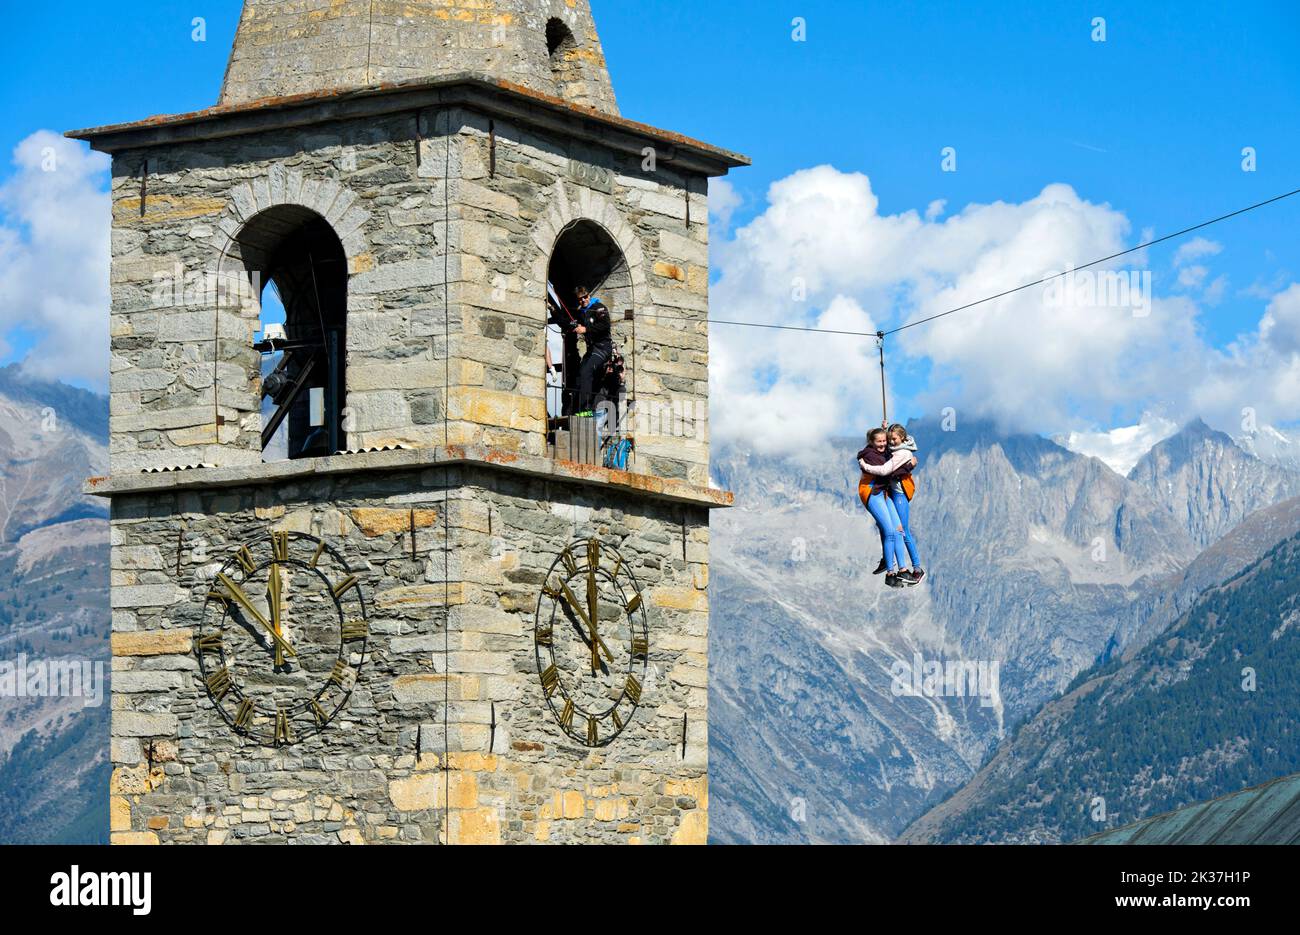 Test de courage, les enfants glissent sur une tyrolienne de la tour de l'église au sol, Visperterminen, Valais, Suisse Banque D'Images